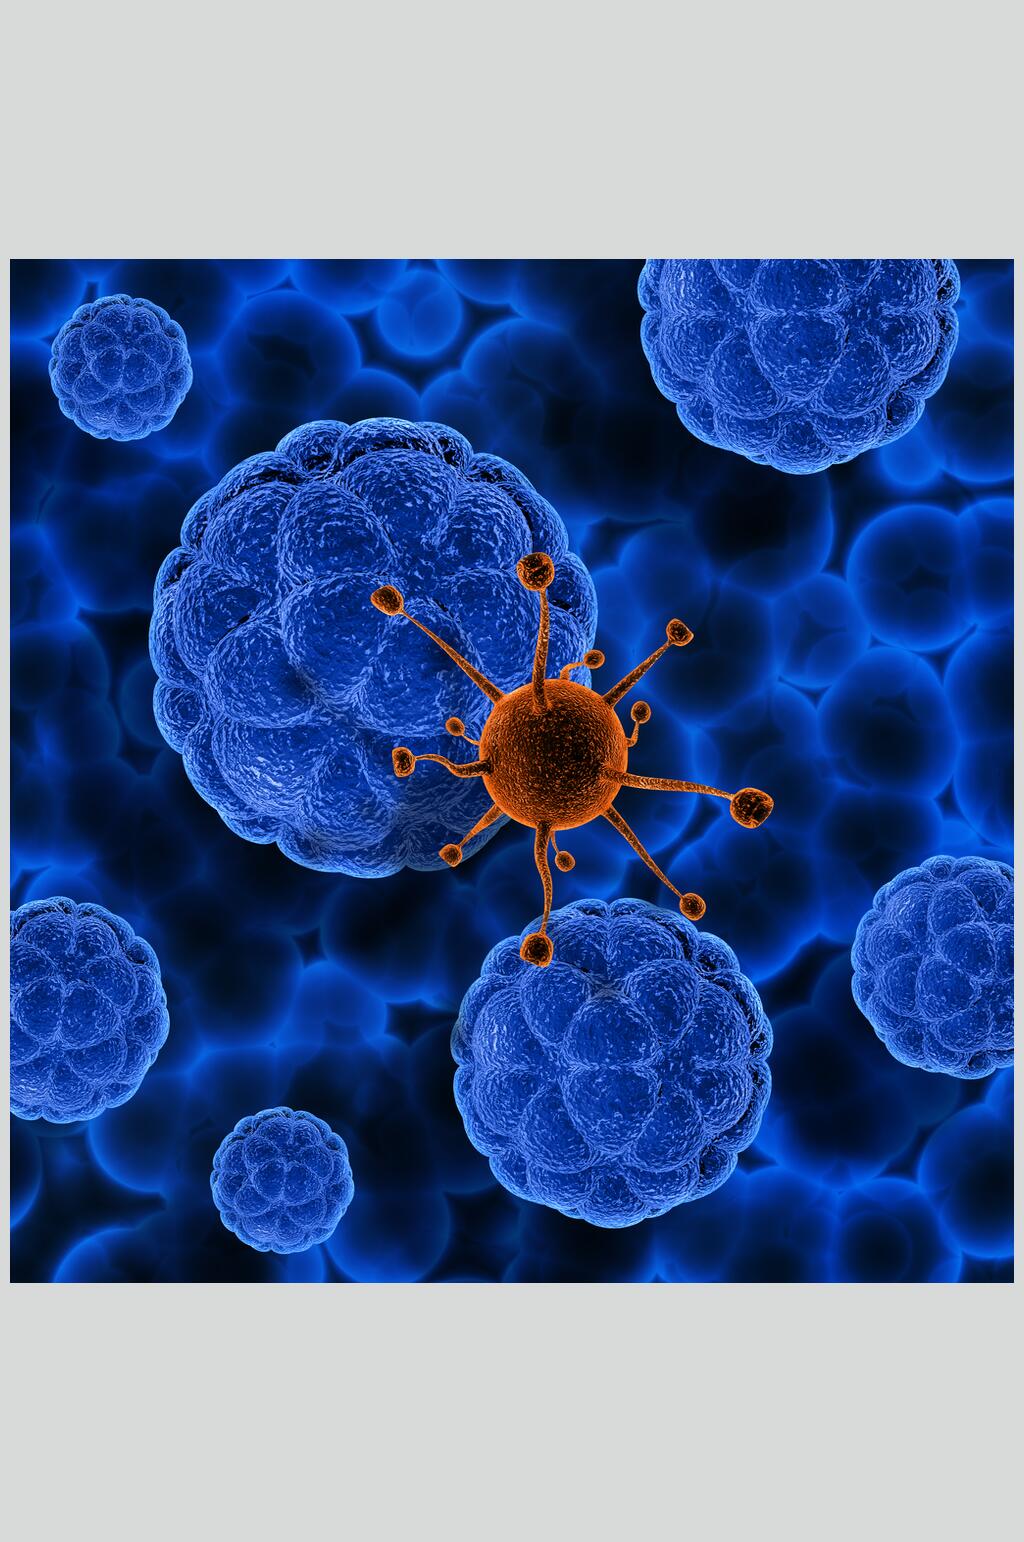 球状病毒图片